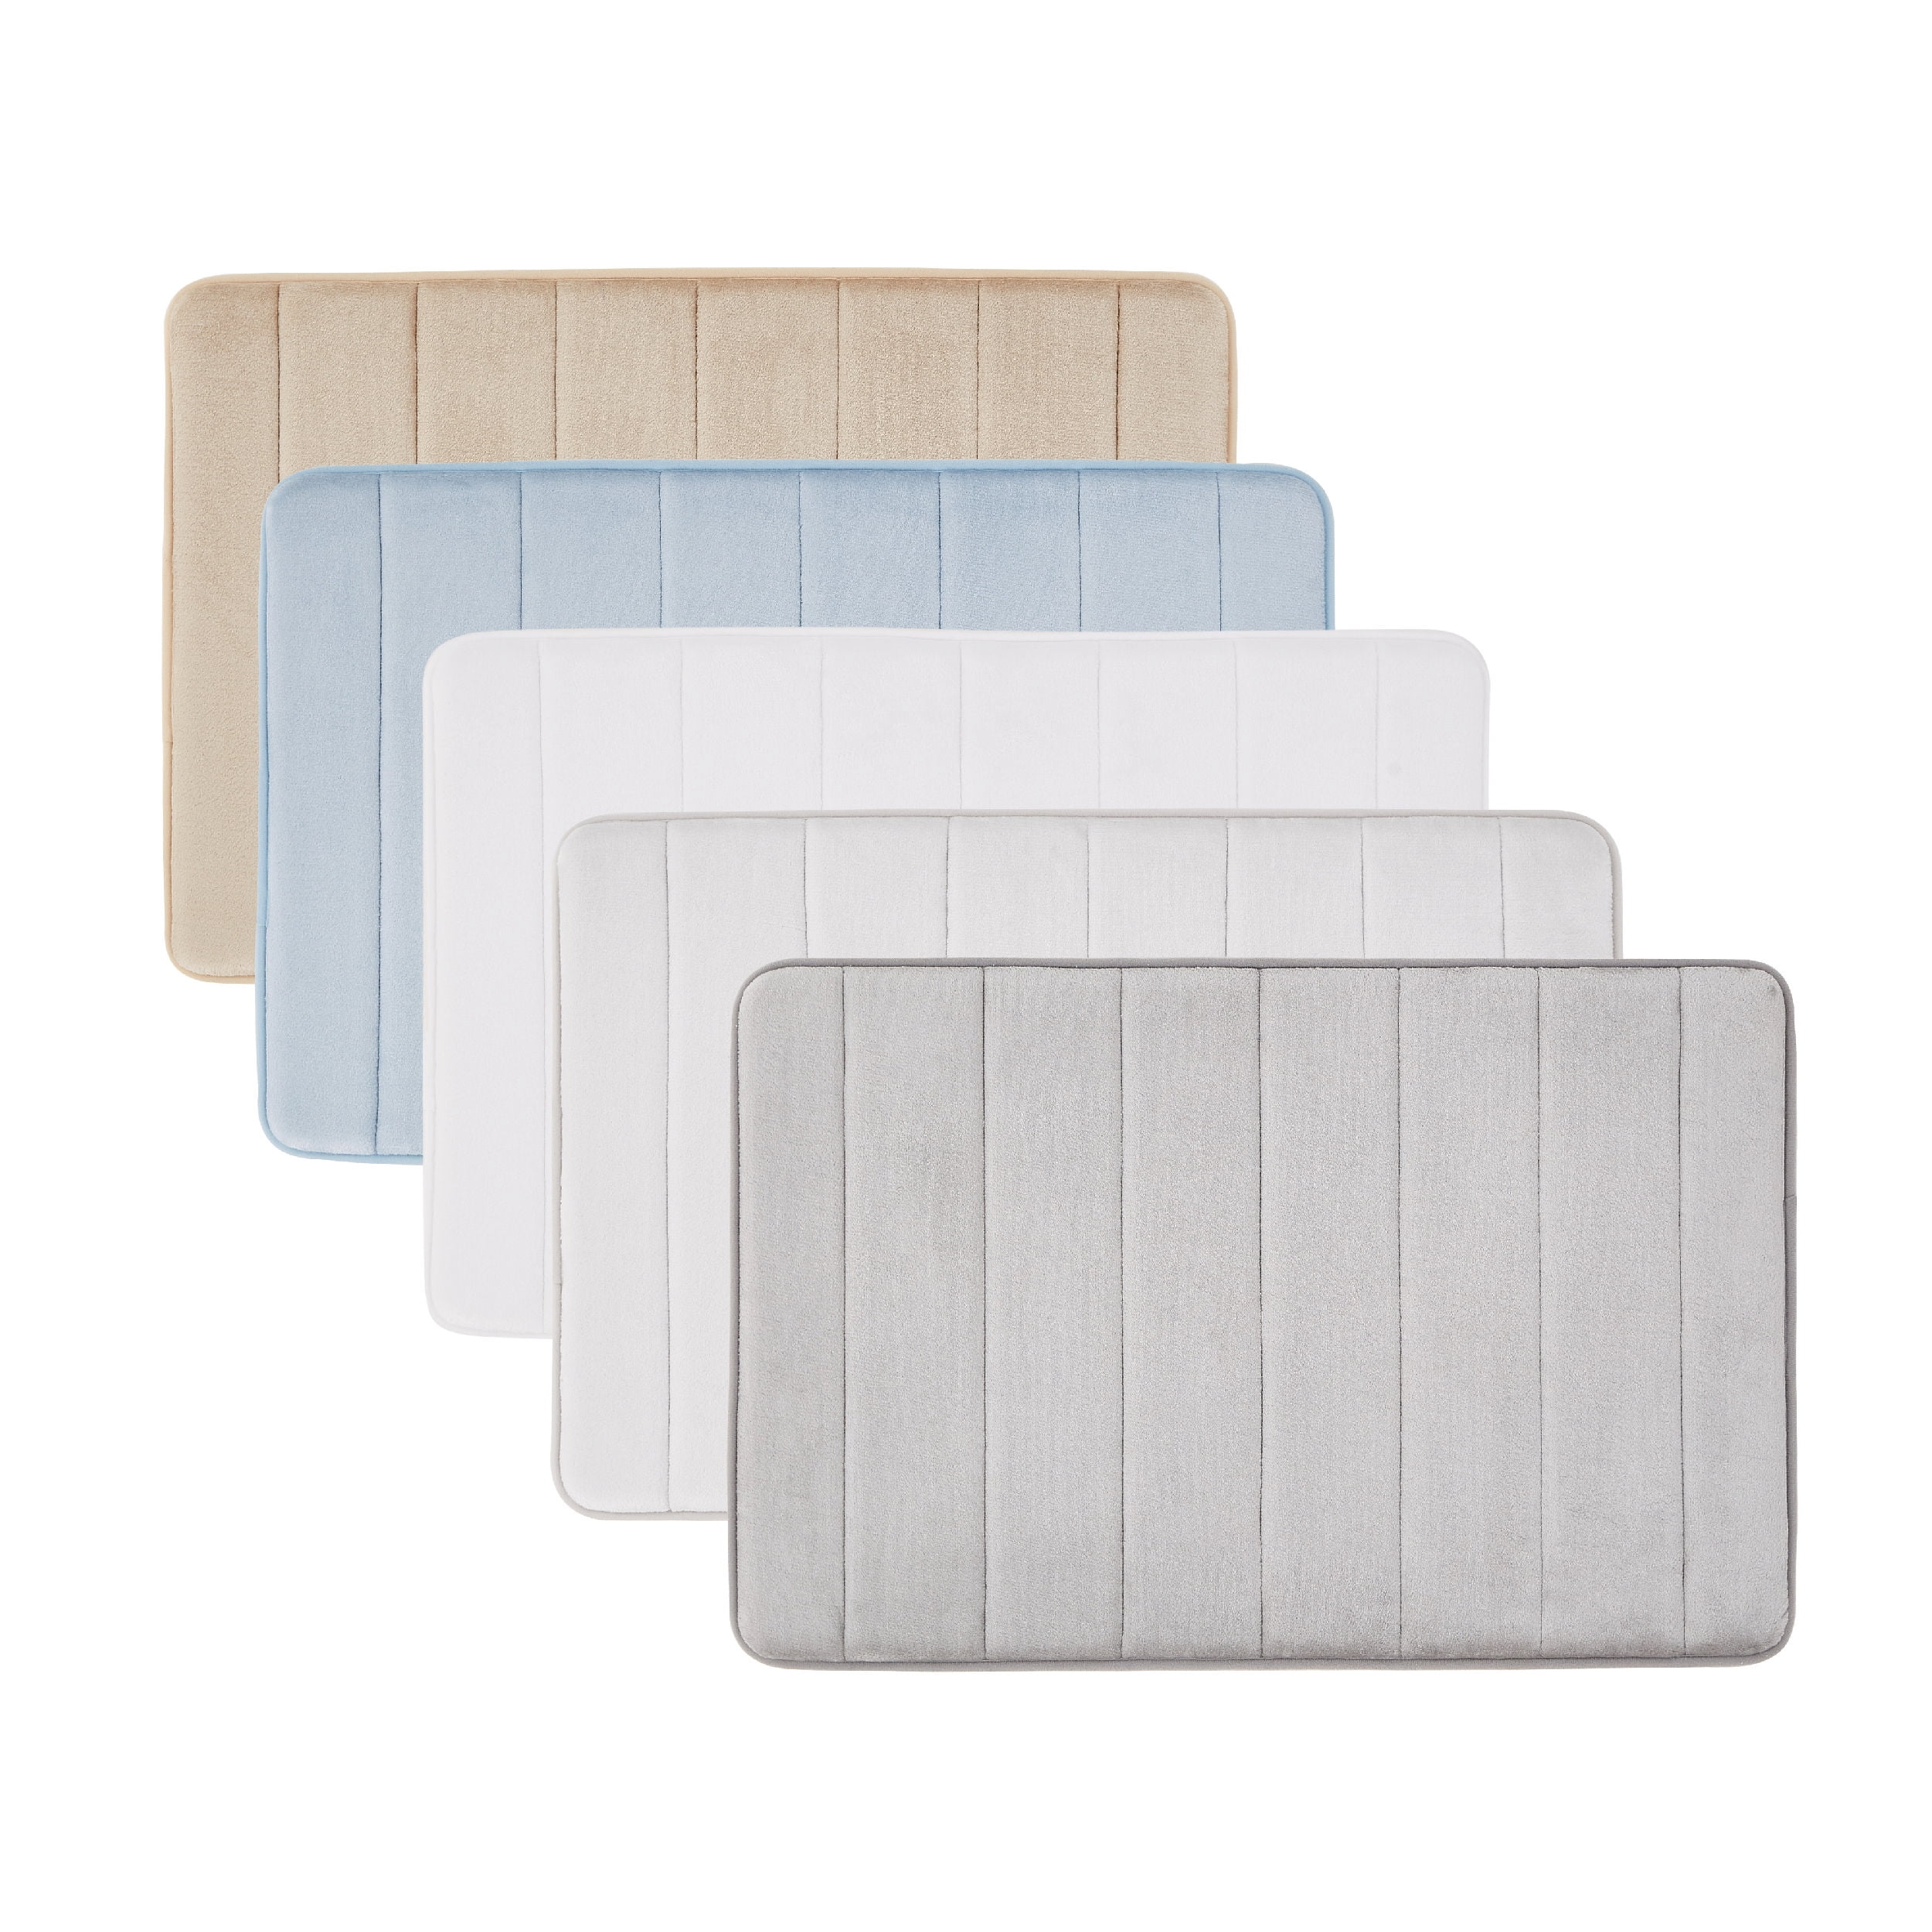 Memory Foam Bath Mat in White, 17 x 24 in – The Everplush Company